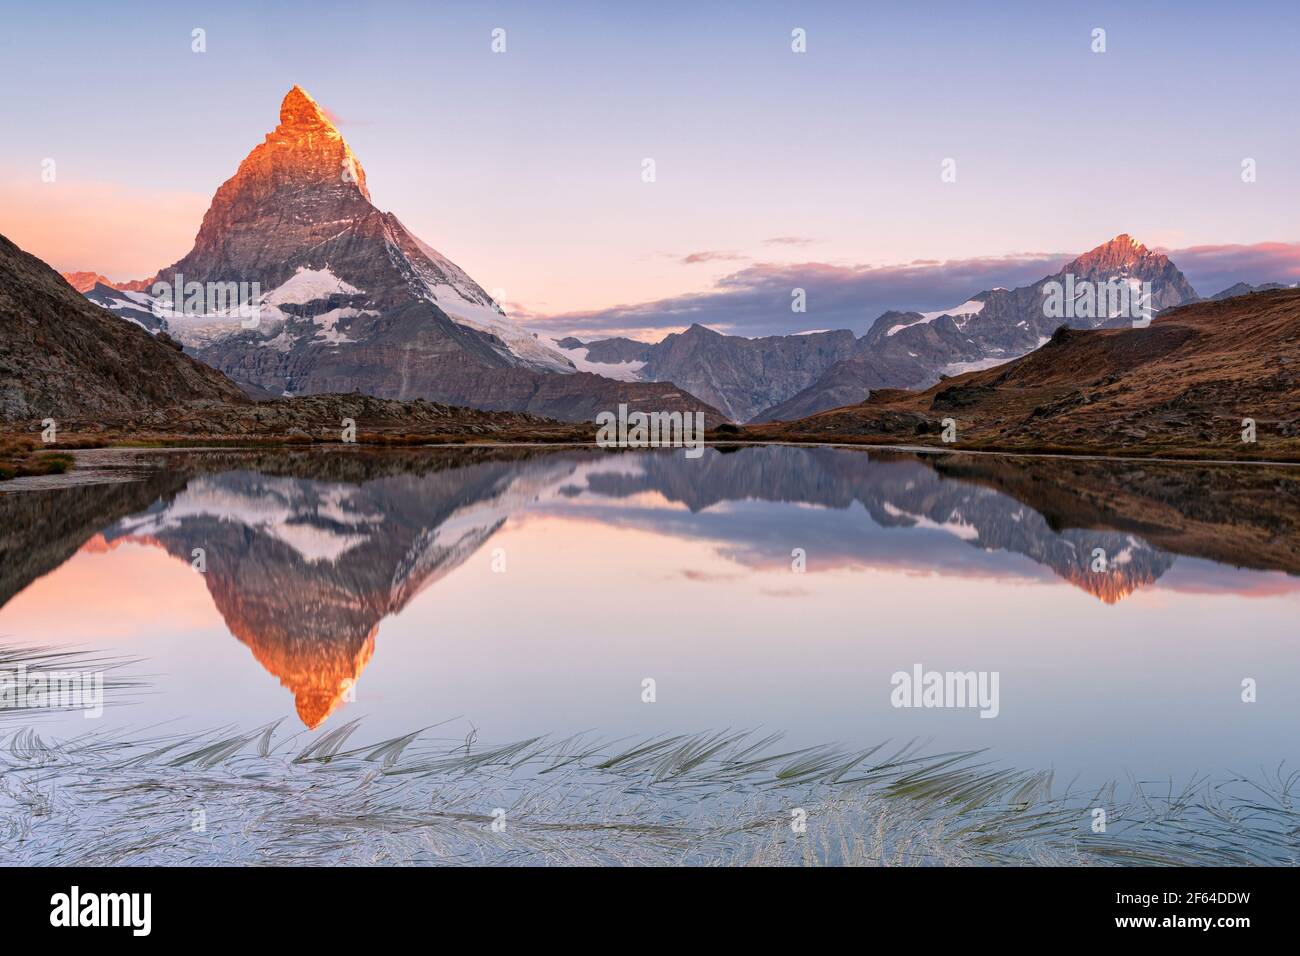 Ciel rose au lever du soleil au-dessus de Matterhorn miroir dans le lac Riffelsee, Gornergrat, Zermatt, canton du Valais, Suisse Banque D'Images